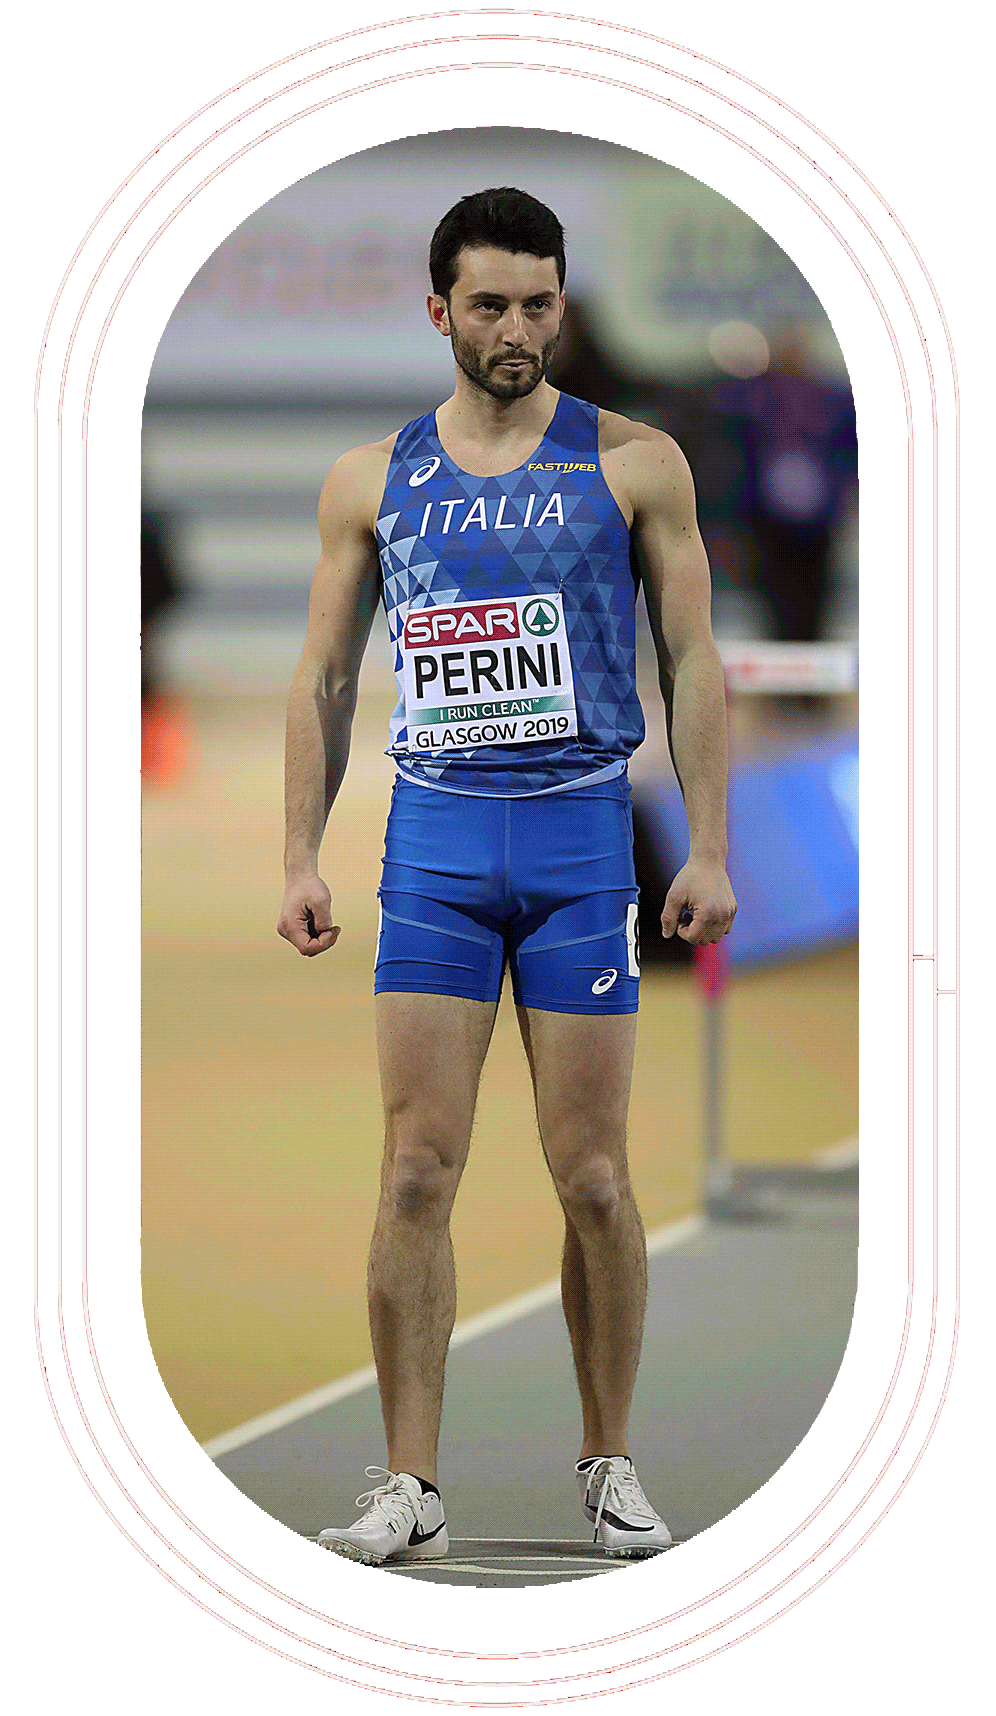 Lorenzo Perini